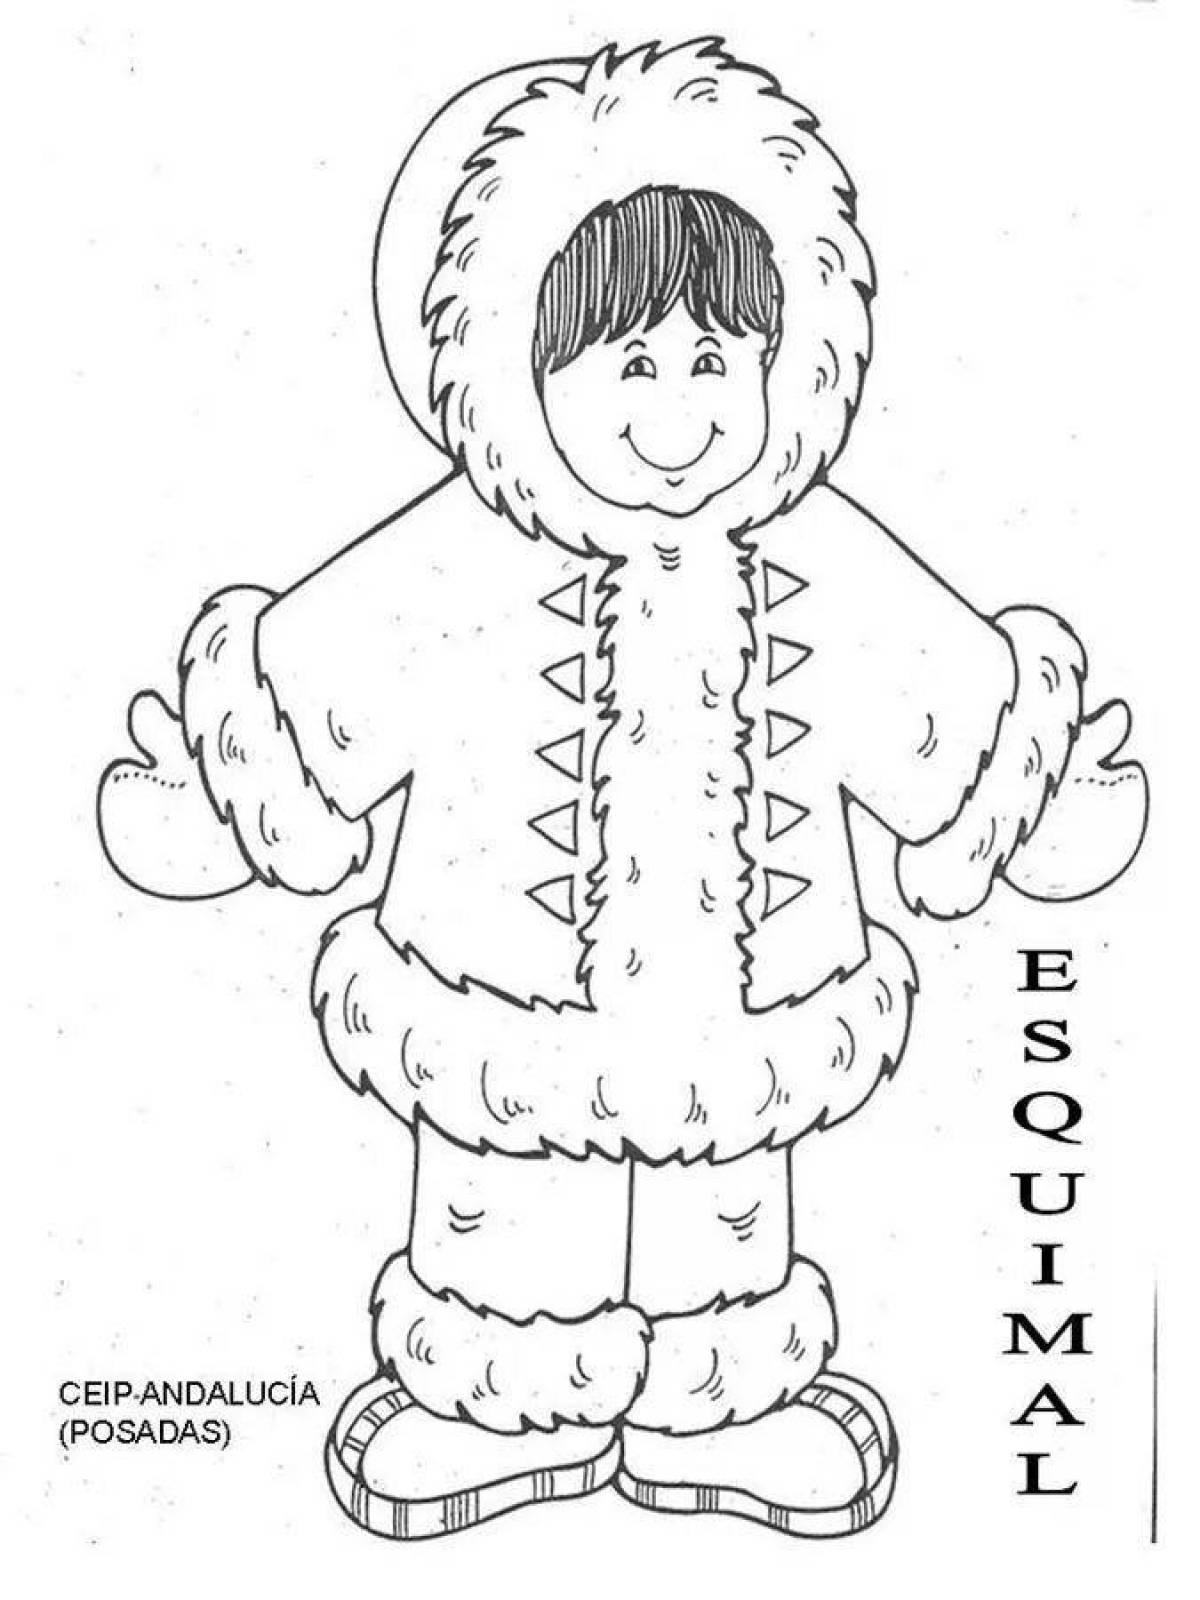 Eskimo creative coloring book